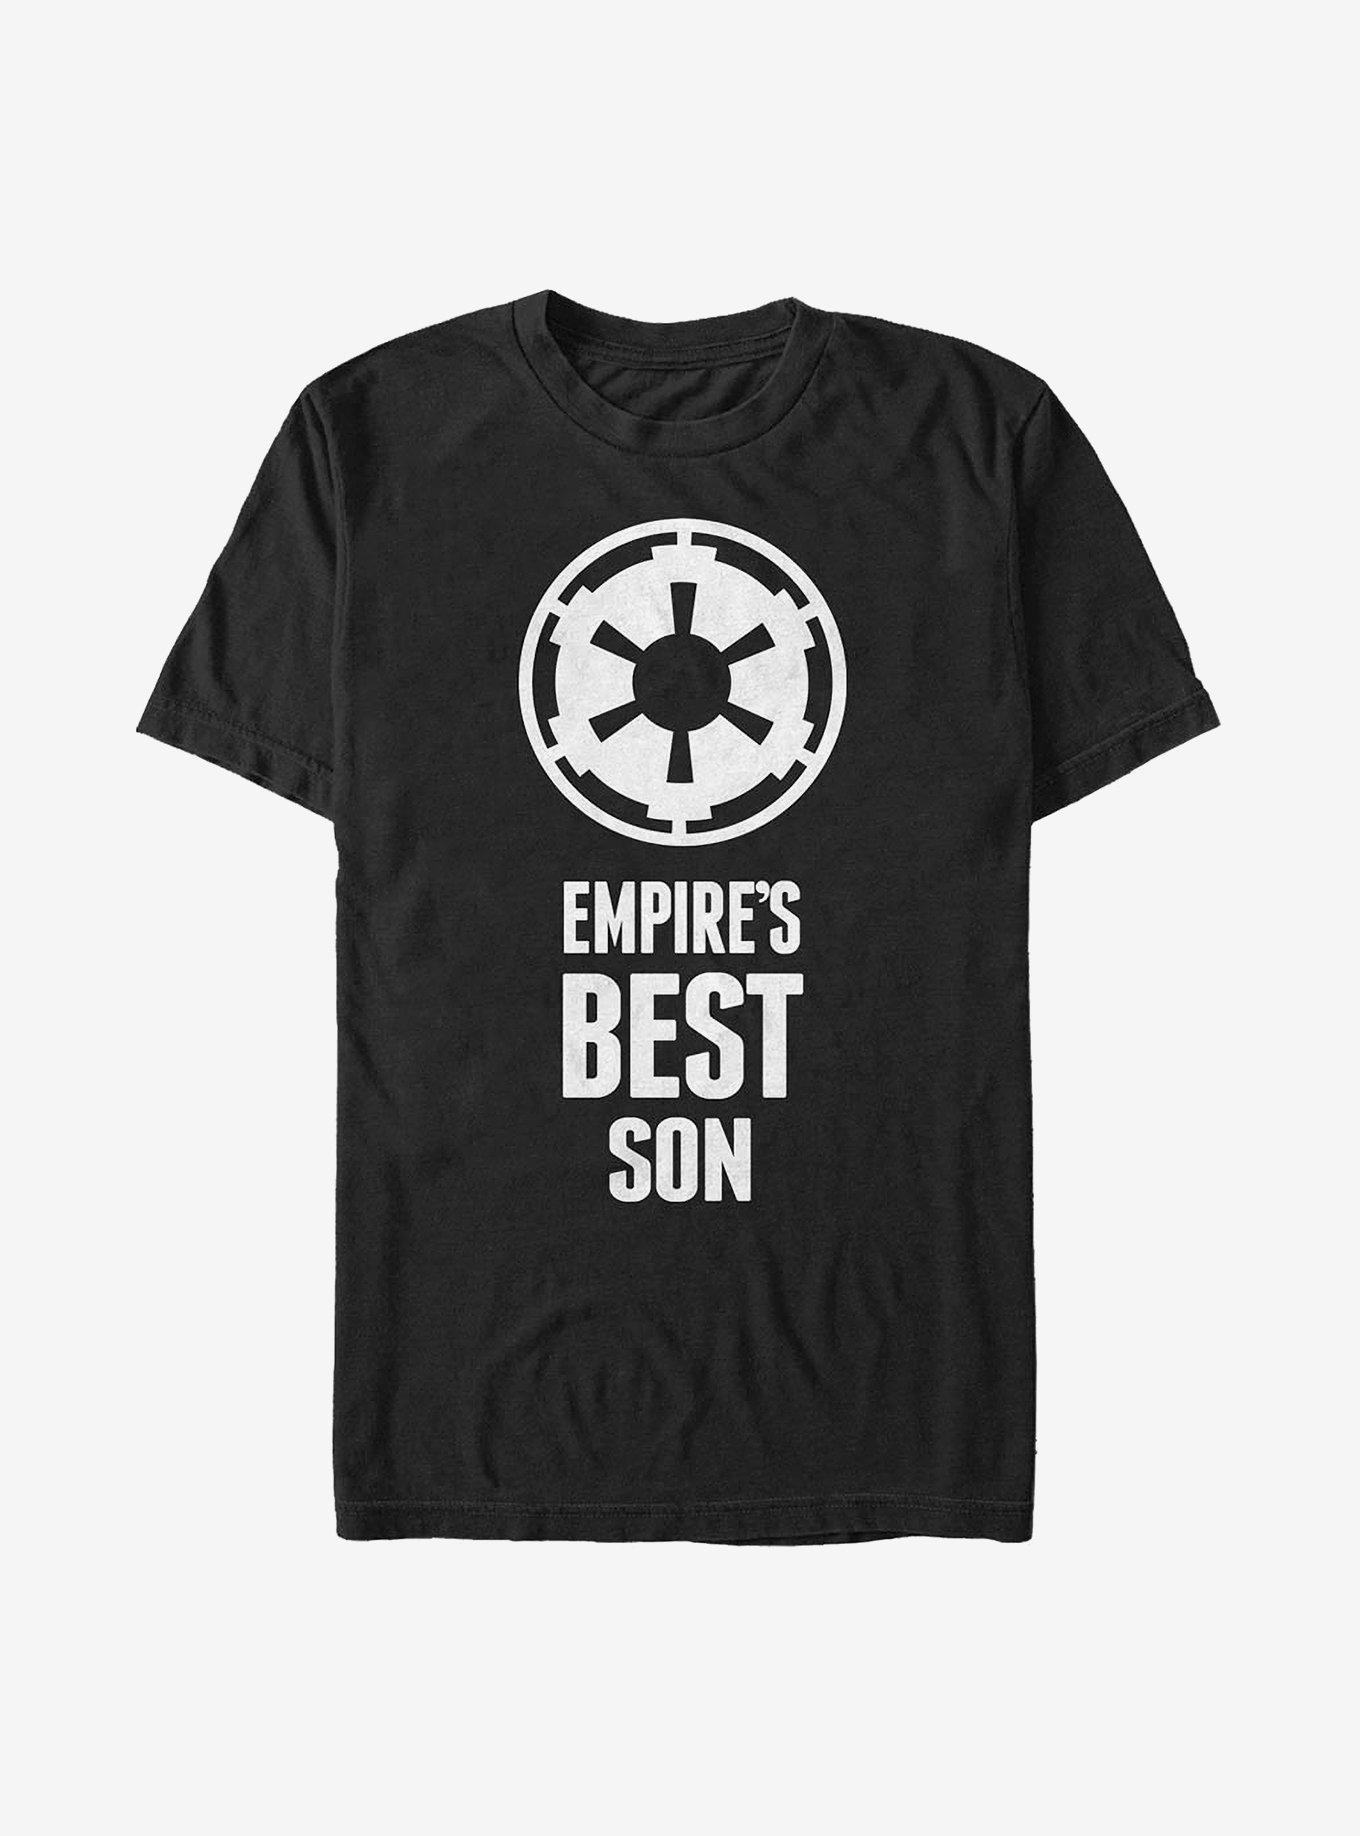 Star Wars Empire's Best Son T-Shirt